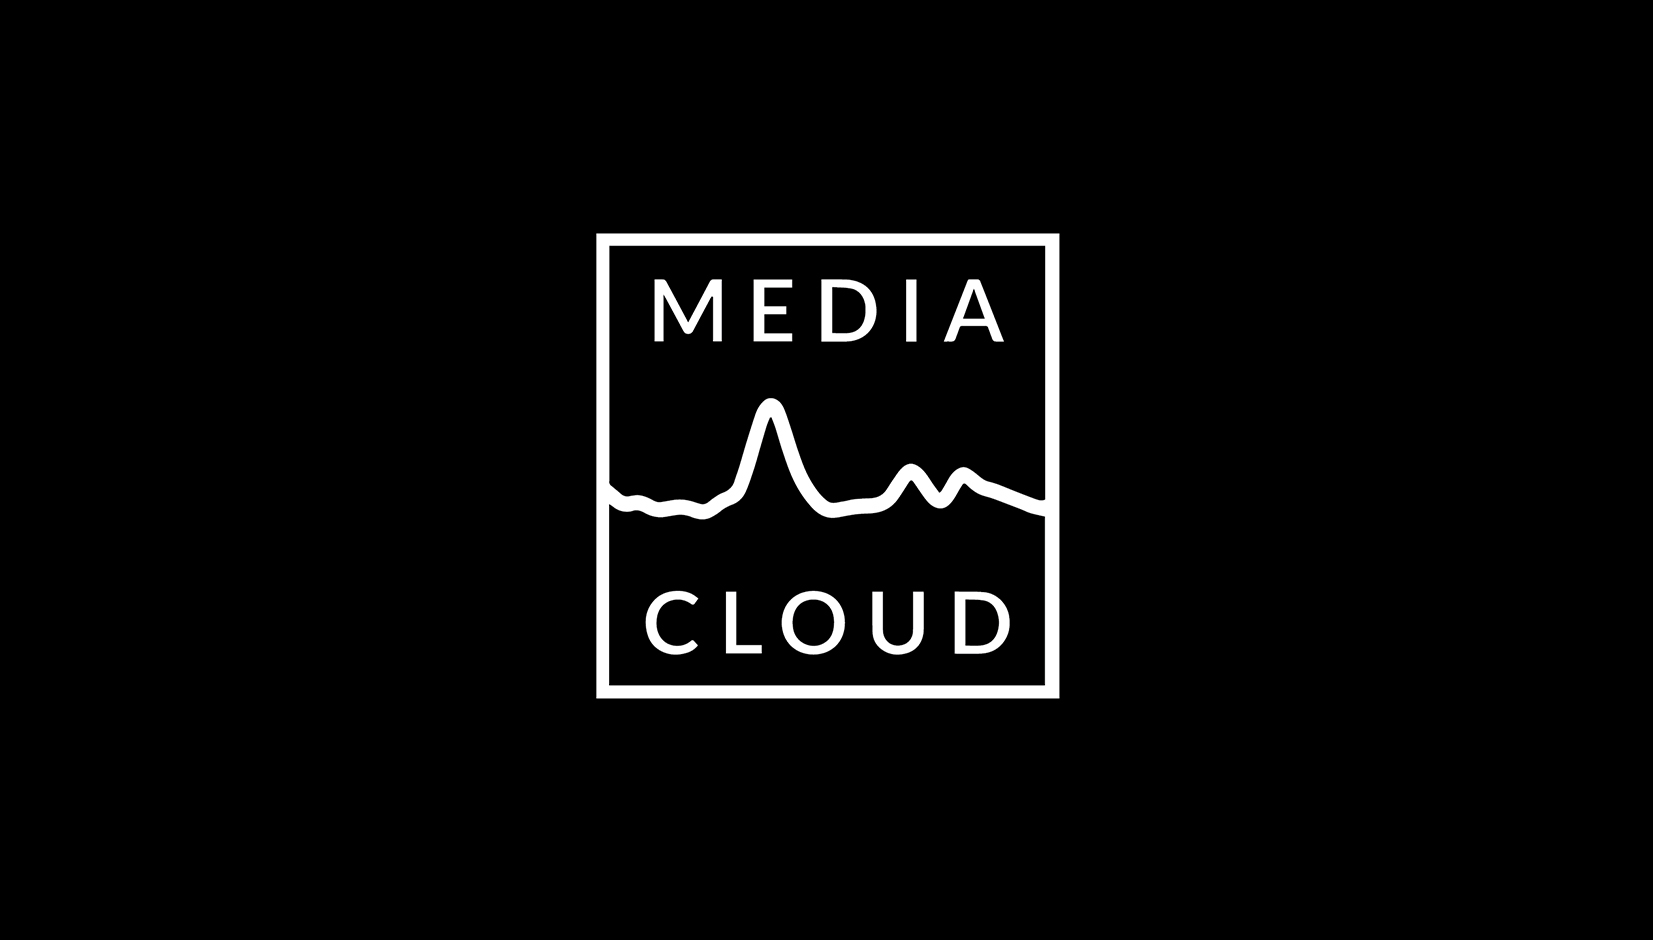 Busca y recolecta datos sobre la cobertura mediática de un tema de tu interés con Media Cloud